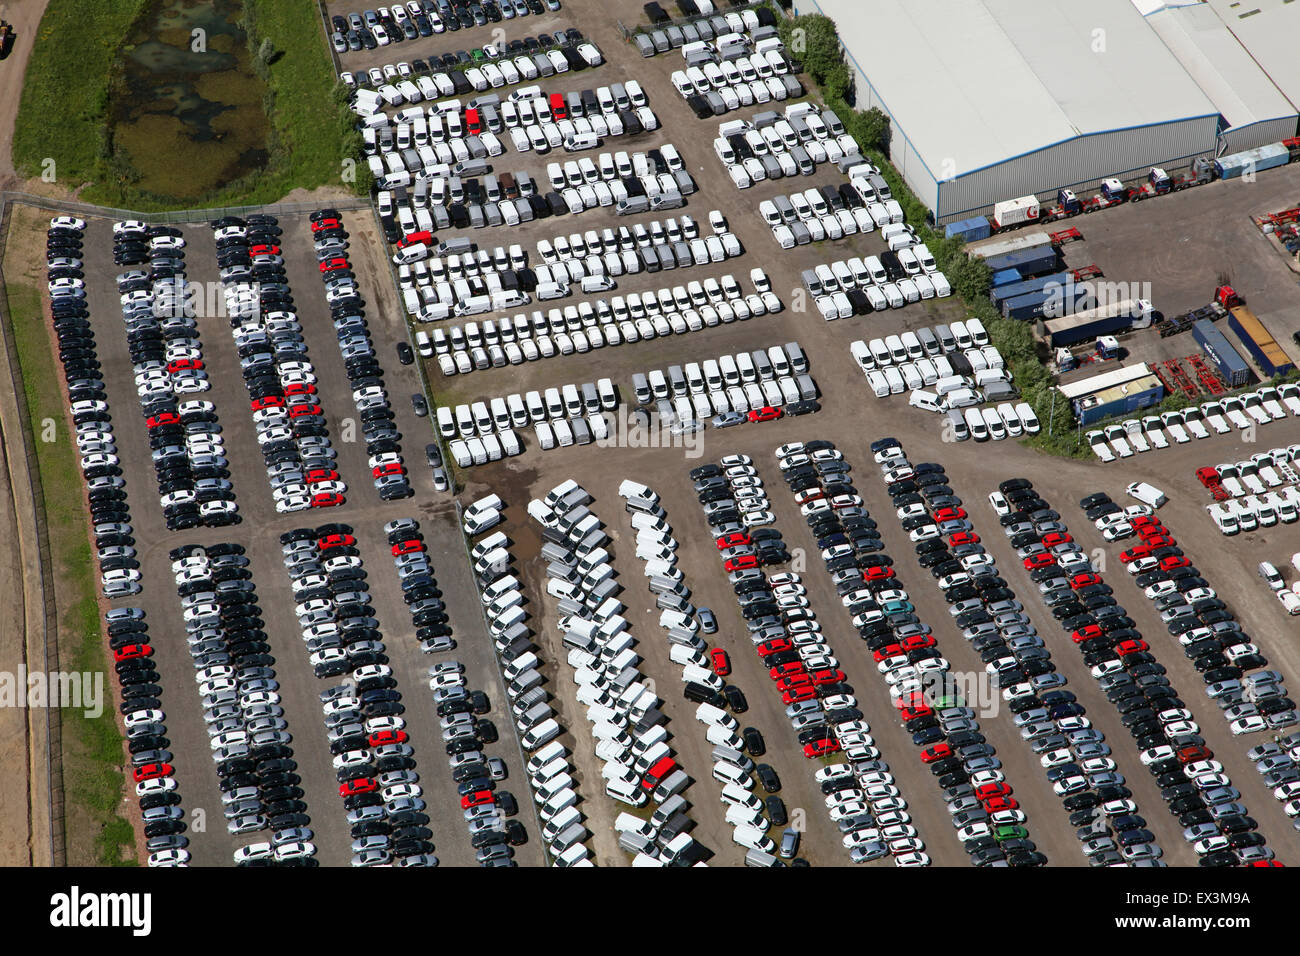 Vista aerea di automobili parcheggiate e furgoni al di fuori di una fabbrica a Stoke on Trent, Regno Unito Foto Stock